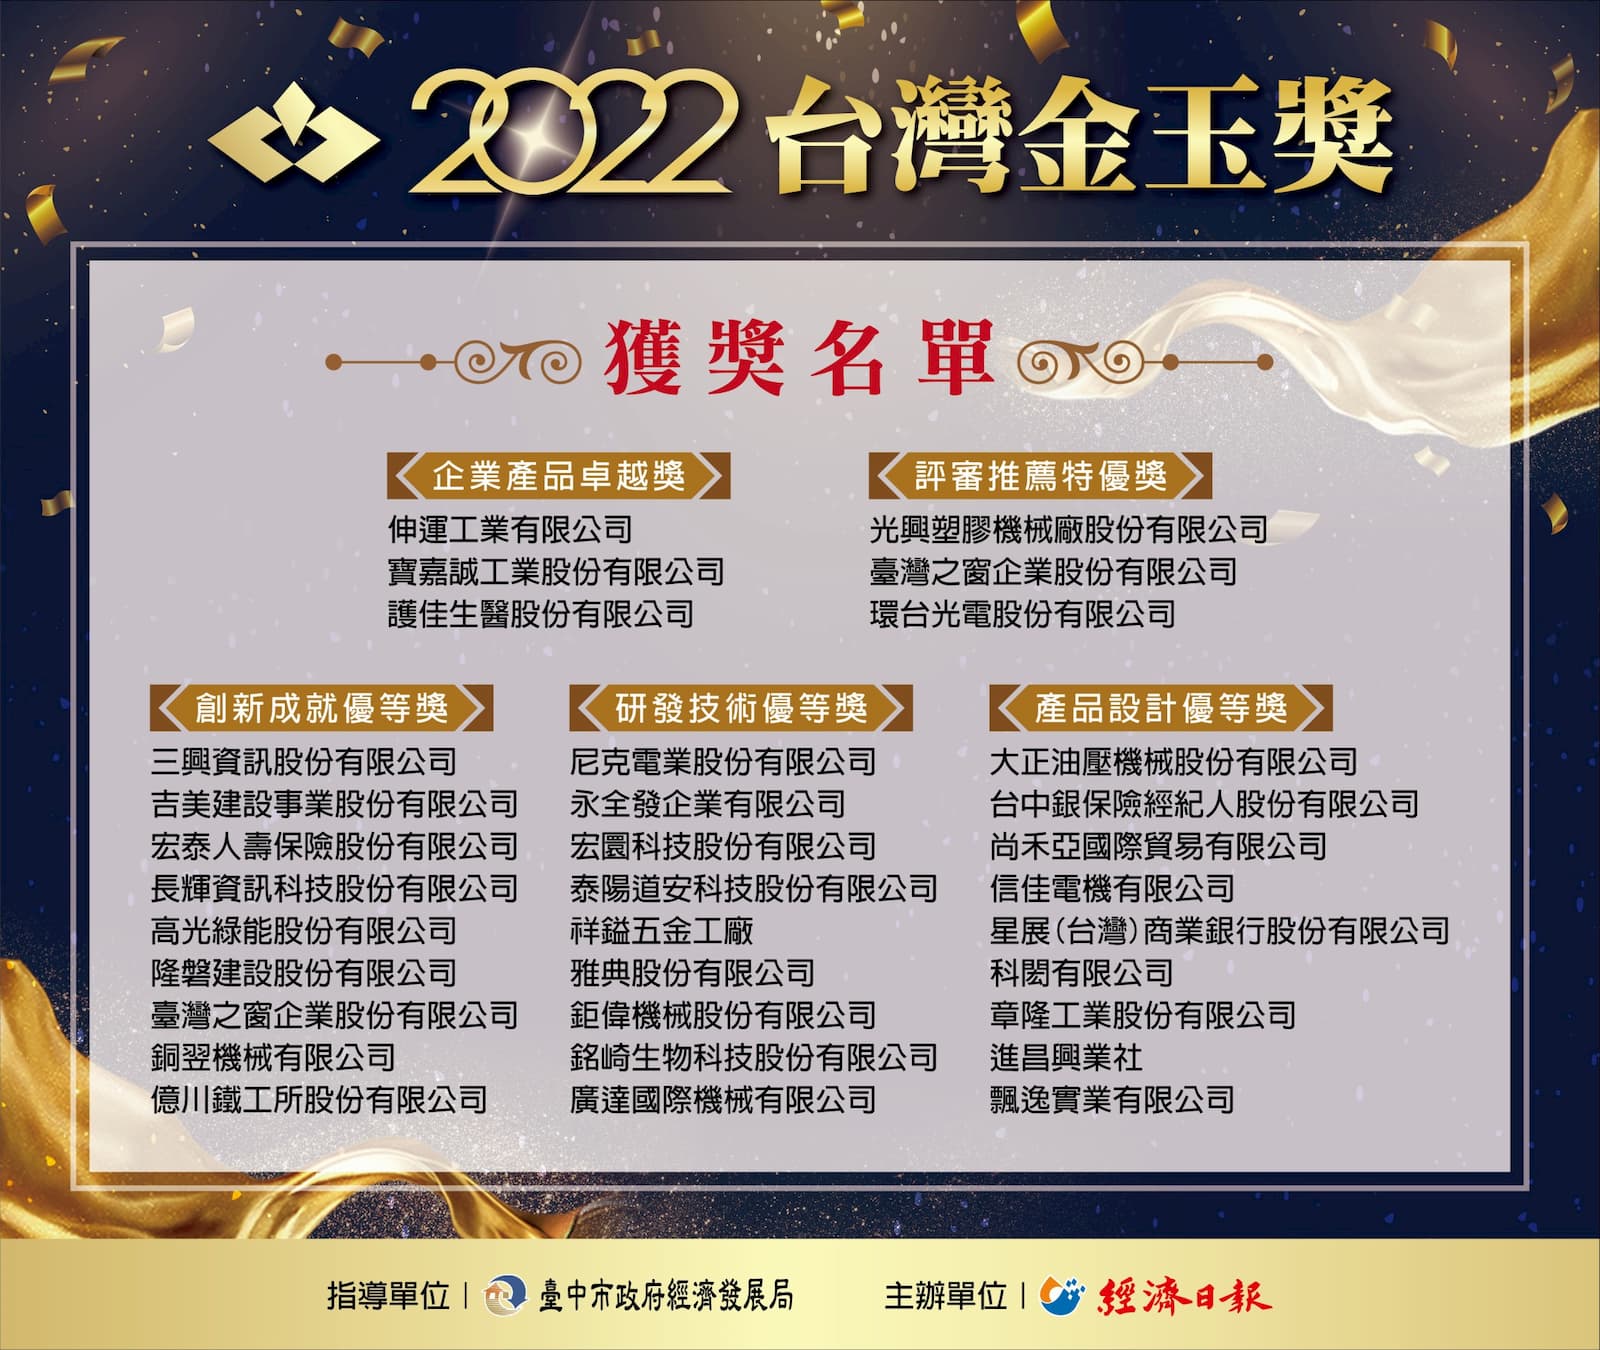 2022 台灣金玉獎 得獎名單